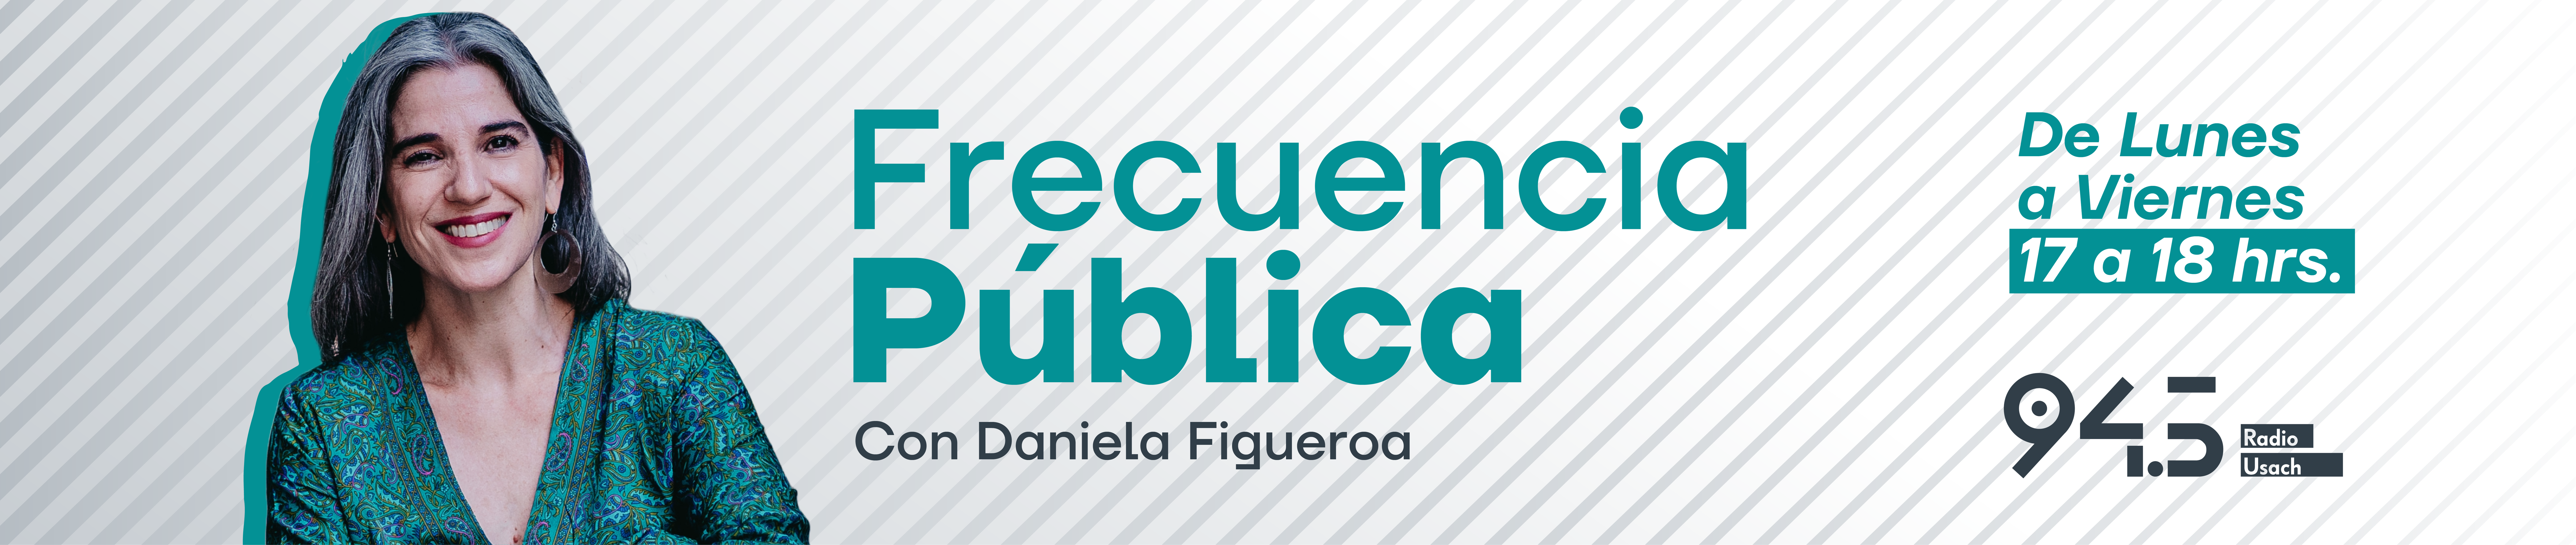 Frecuencia Pública, con Daniela Figueroa. De lunes a Viernes de 17 a 18hrs